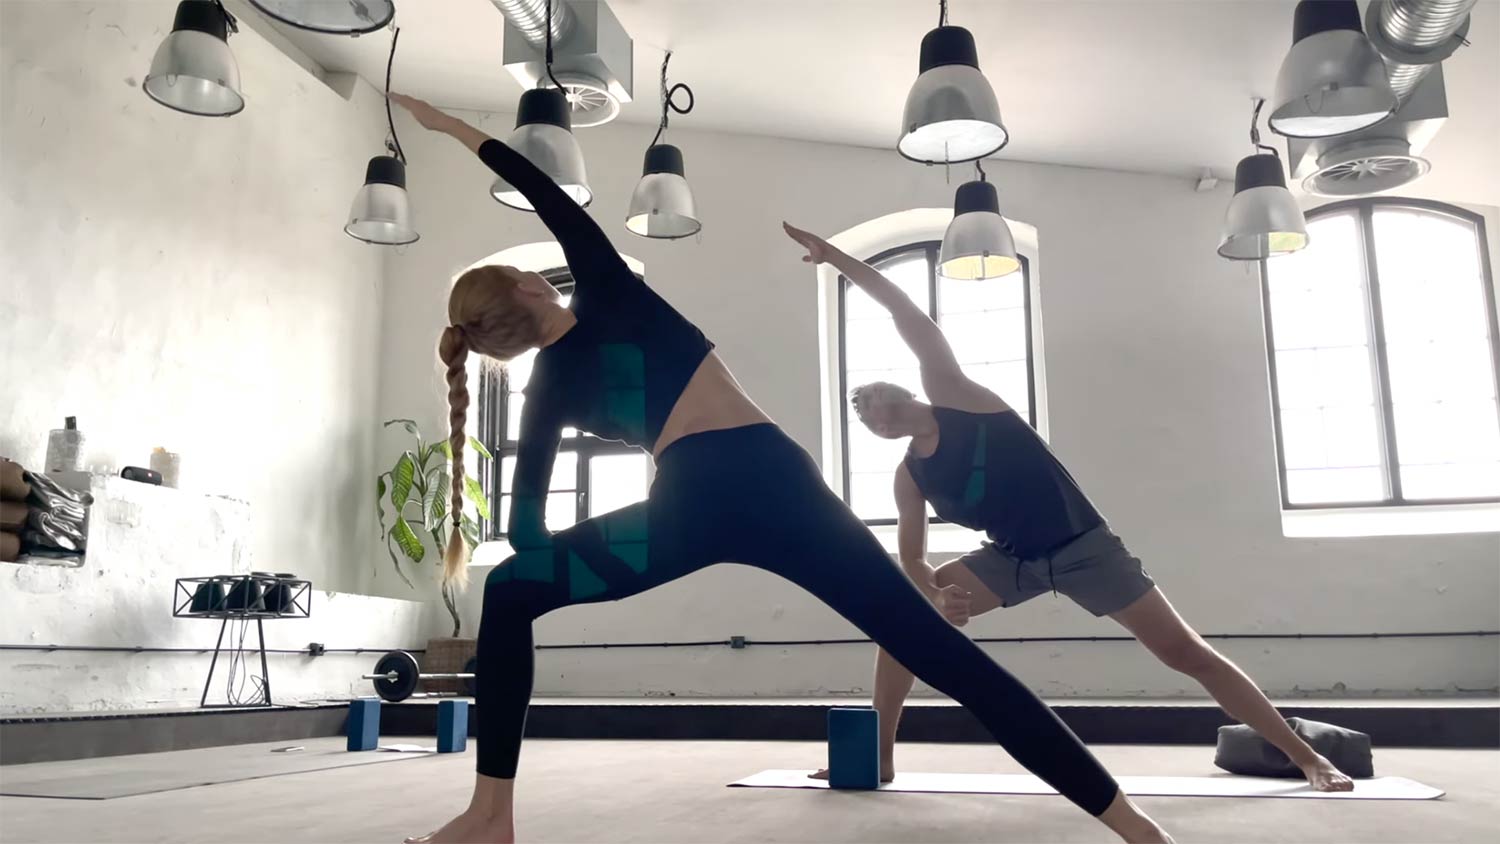 guru kelas yoga privat di tallinn estonia